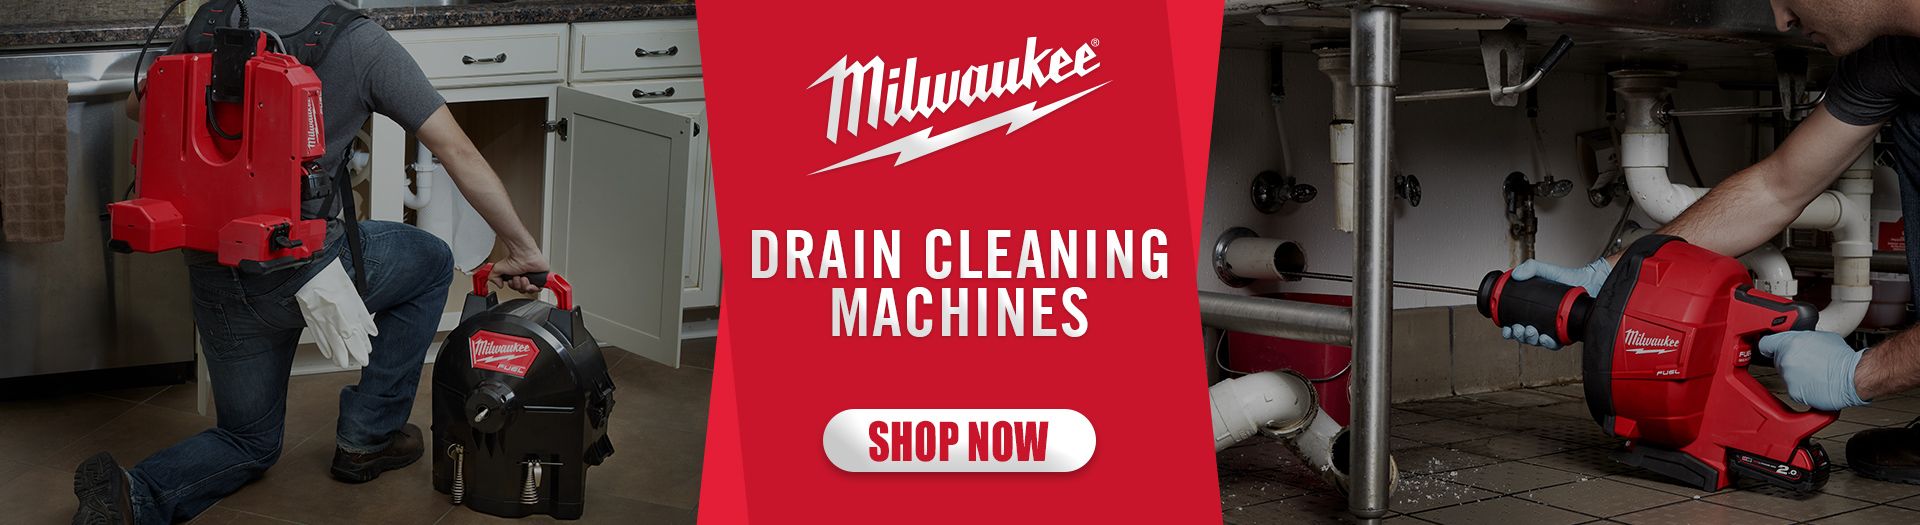 Milwaukee Drain Cleaning Machines 